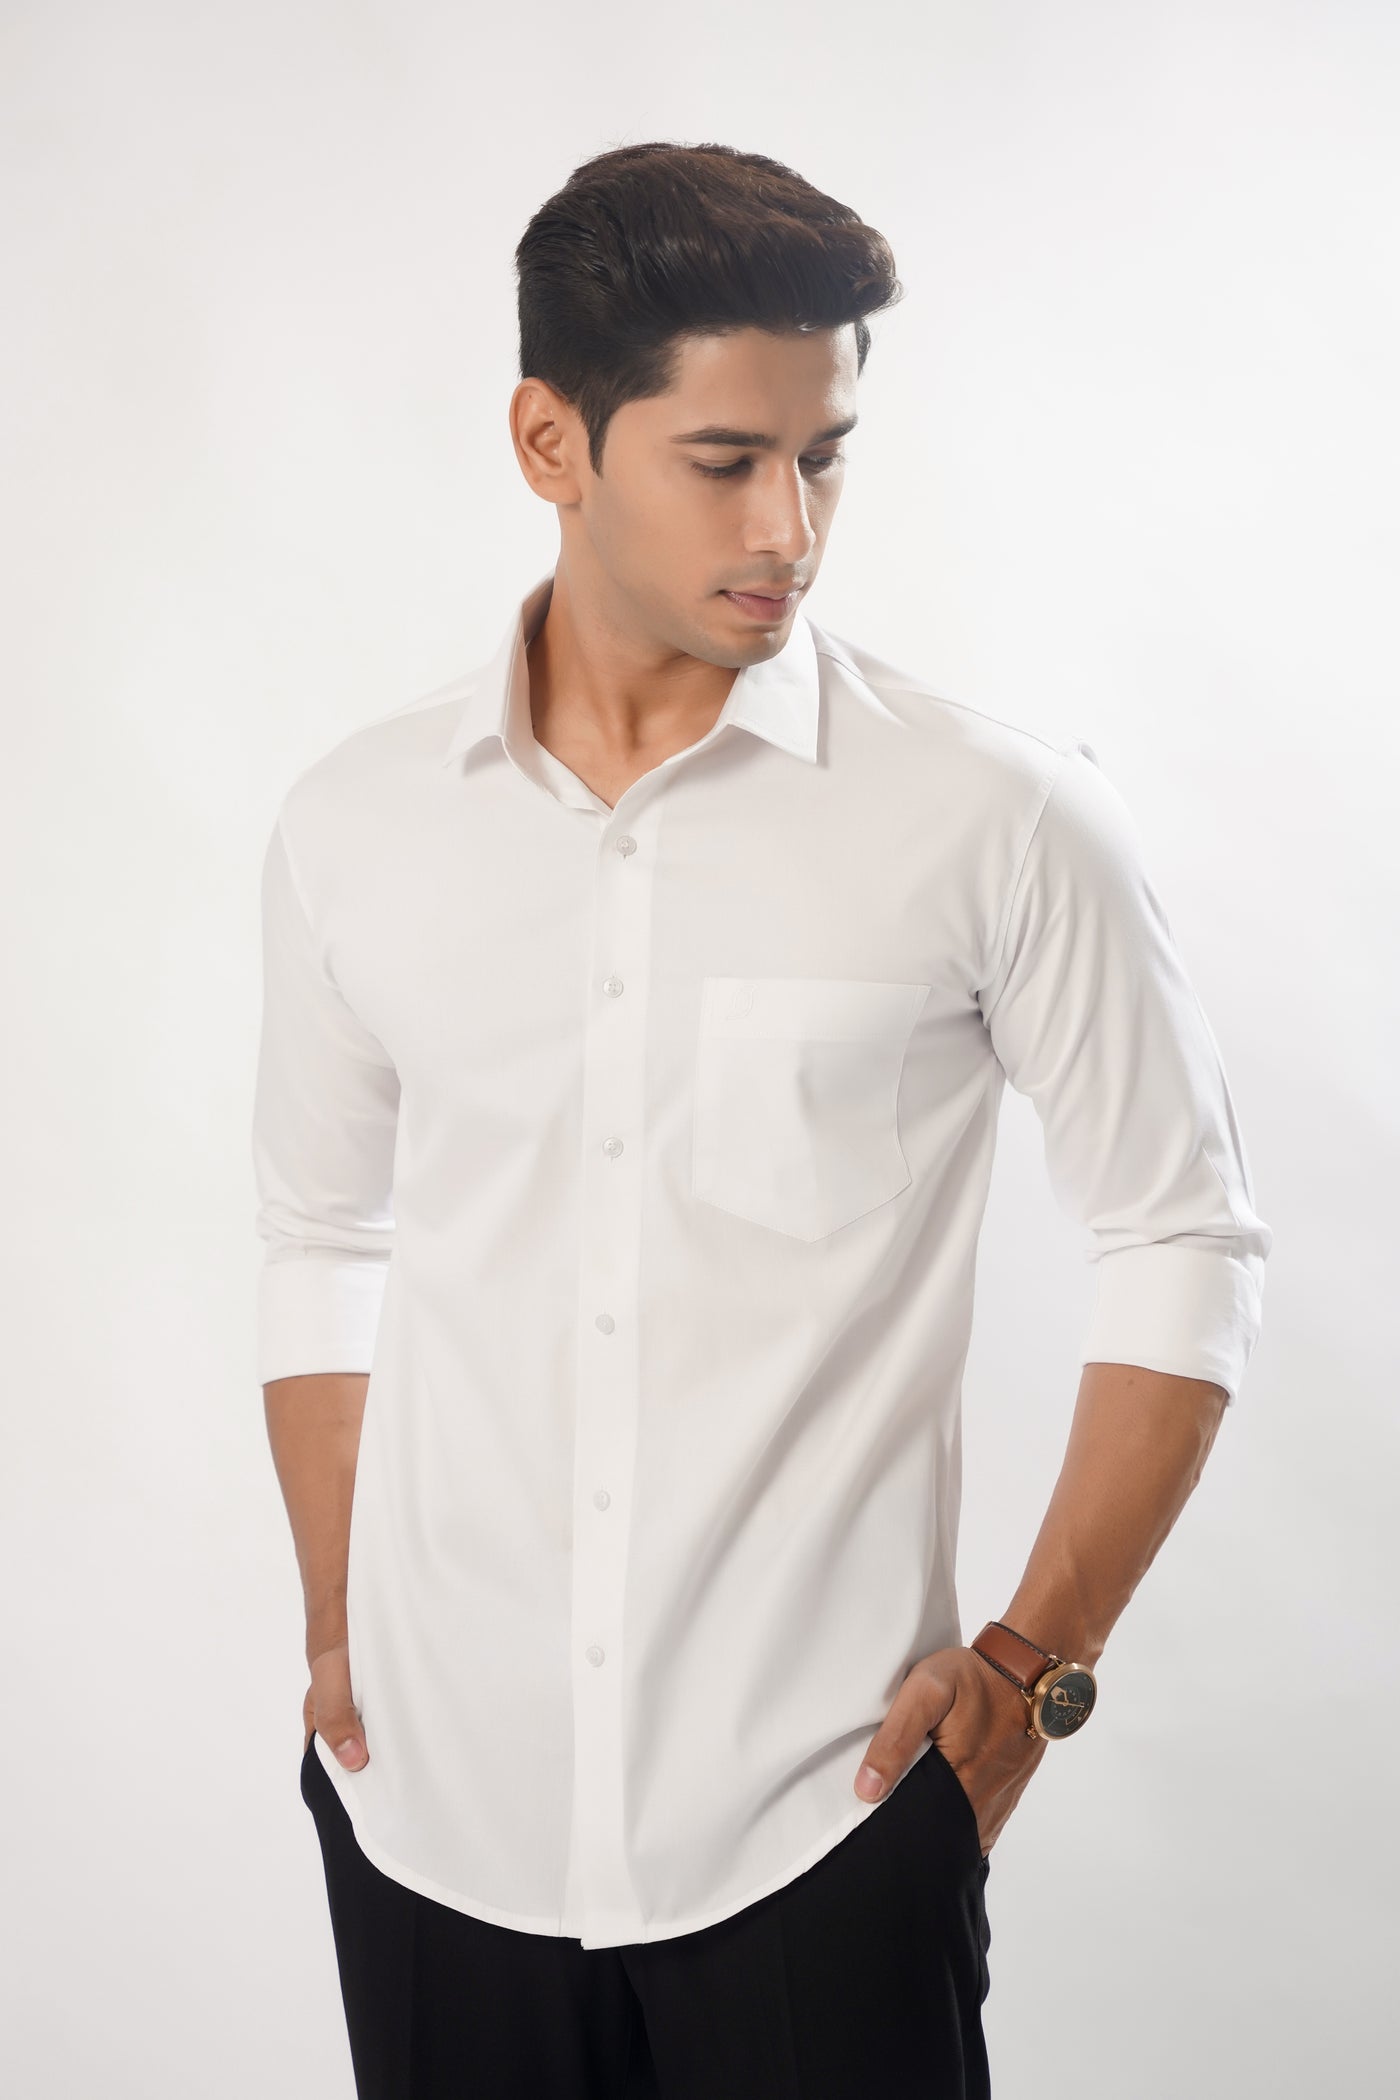 Bright White Super Soft Cotton Premium Plaid Shirt